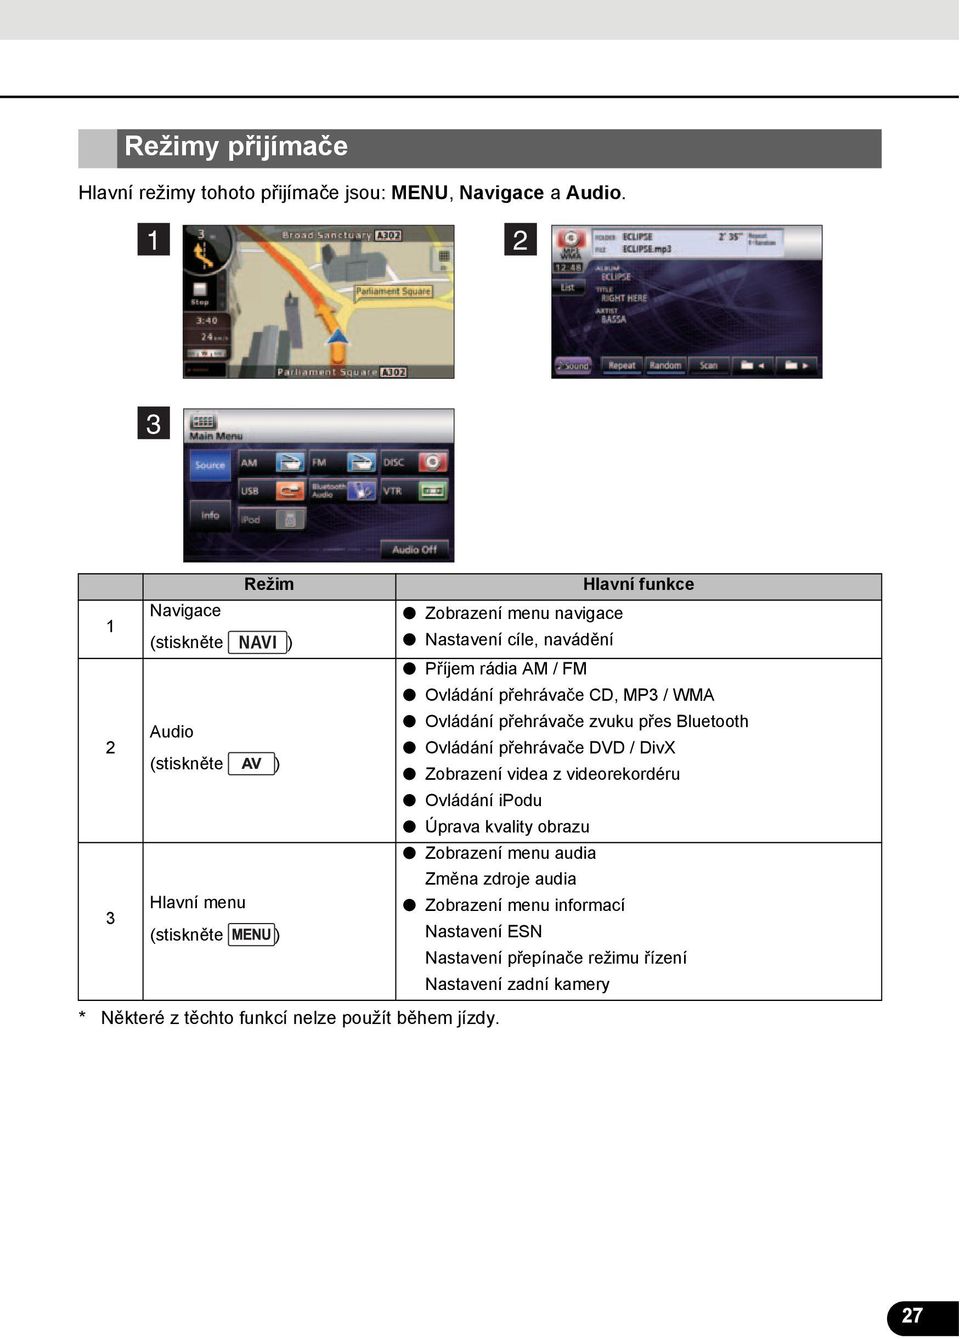 Audio Ovládání přehrávače zvuku přes Bluetooth Ovládání přehrávače DVD / DivX (stiskněte ) Zobrazení videa z videorekordéru Ovládání ipodu Úprava